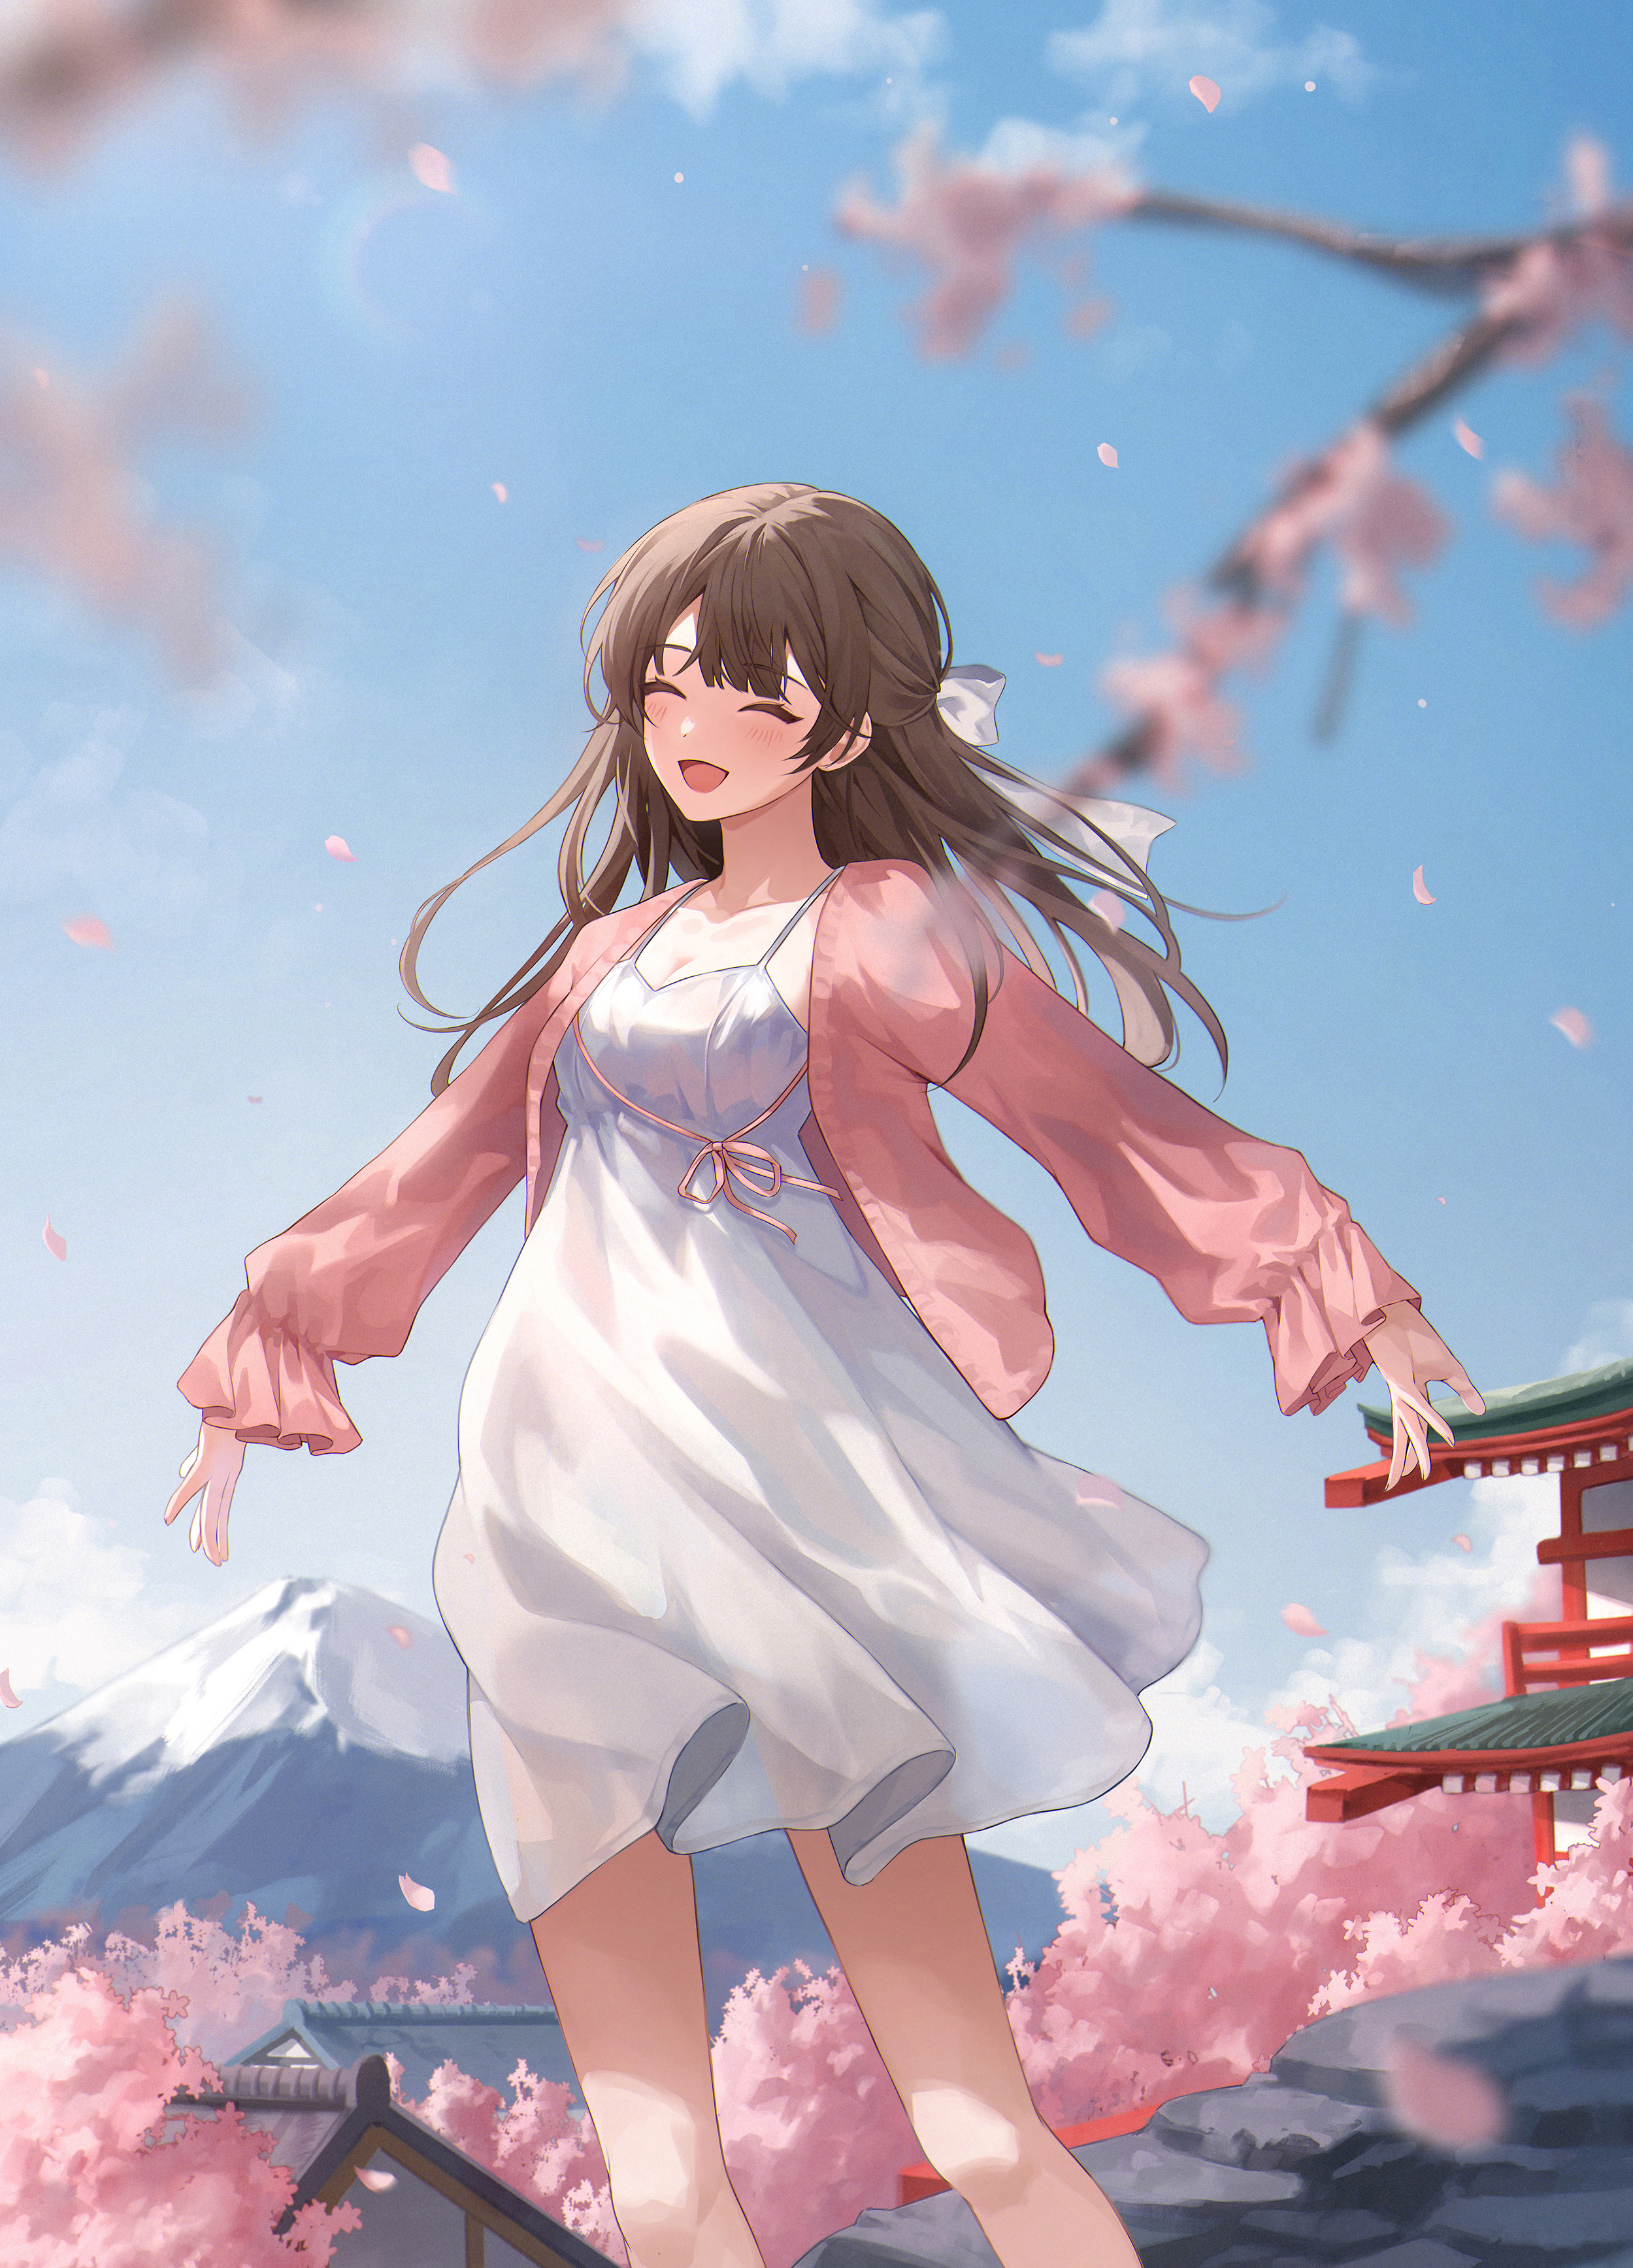 Anime 2499x3471 anime anime girls Fruit Ade artwork cherry blossom brunette dress Mount Fuji